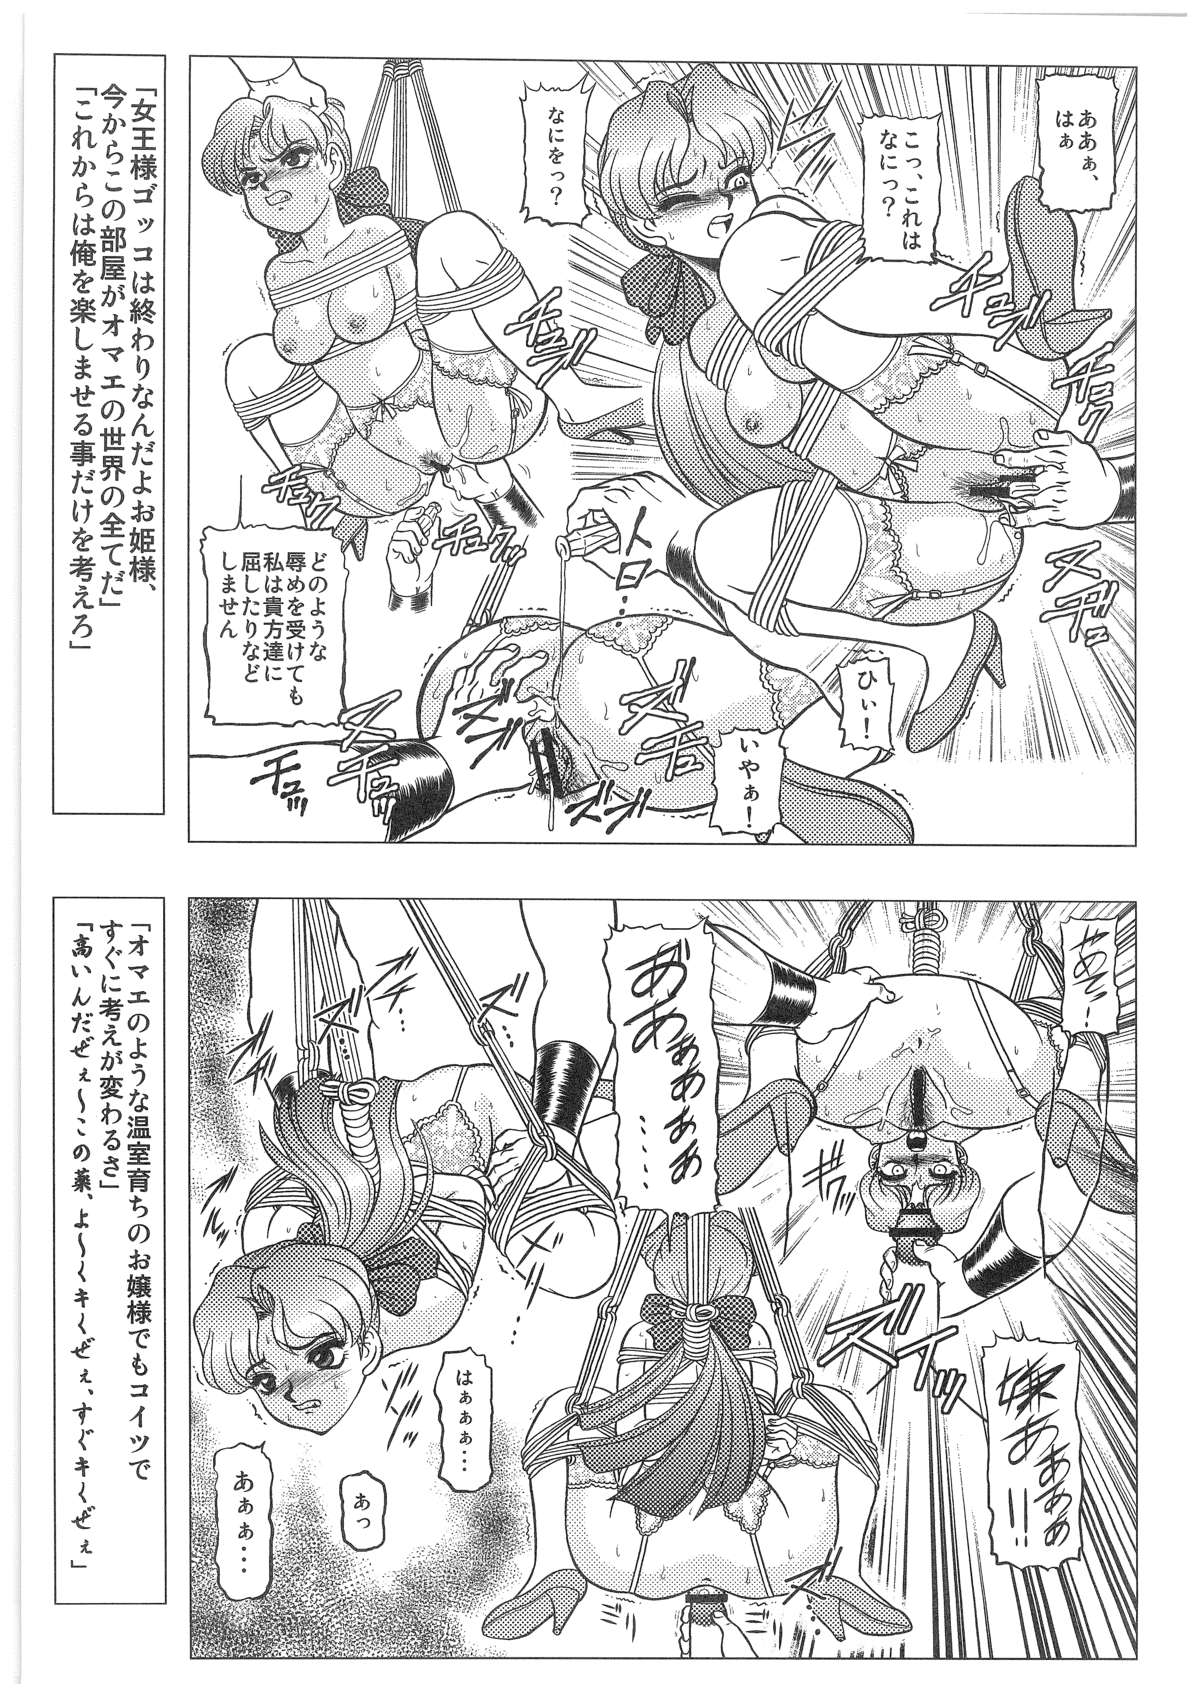 [Dakimakuma, Jingai Makyou Club (WING☆BIRD)] CHARA EMU W☆B010 GONDAM 008 ZZ-W-F91 (Various) page 6 full